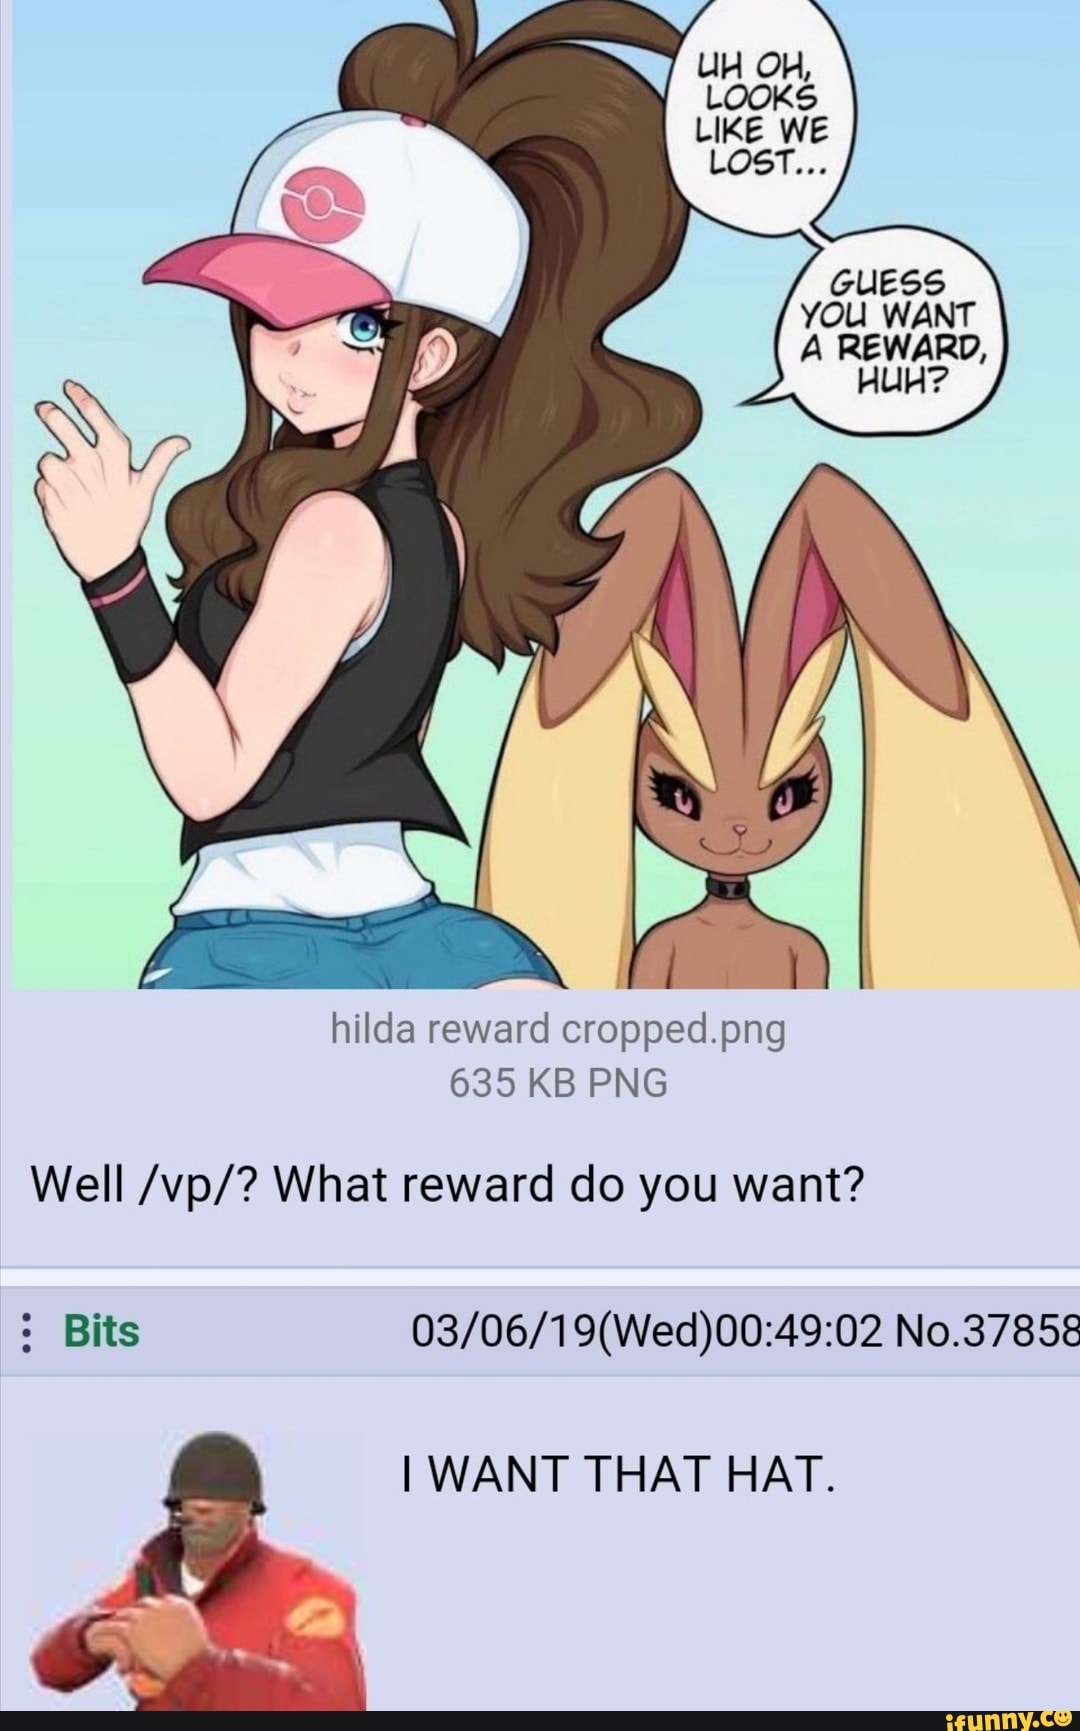 Hilda's reward